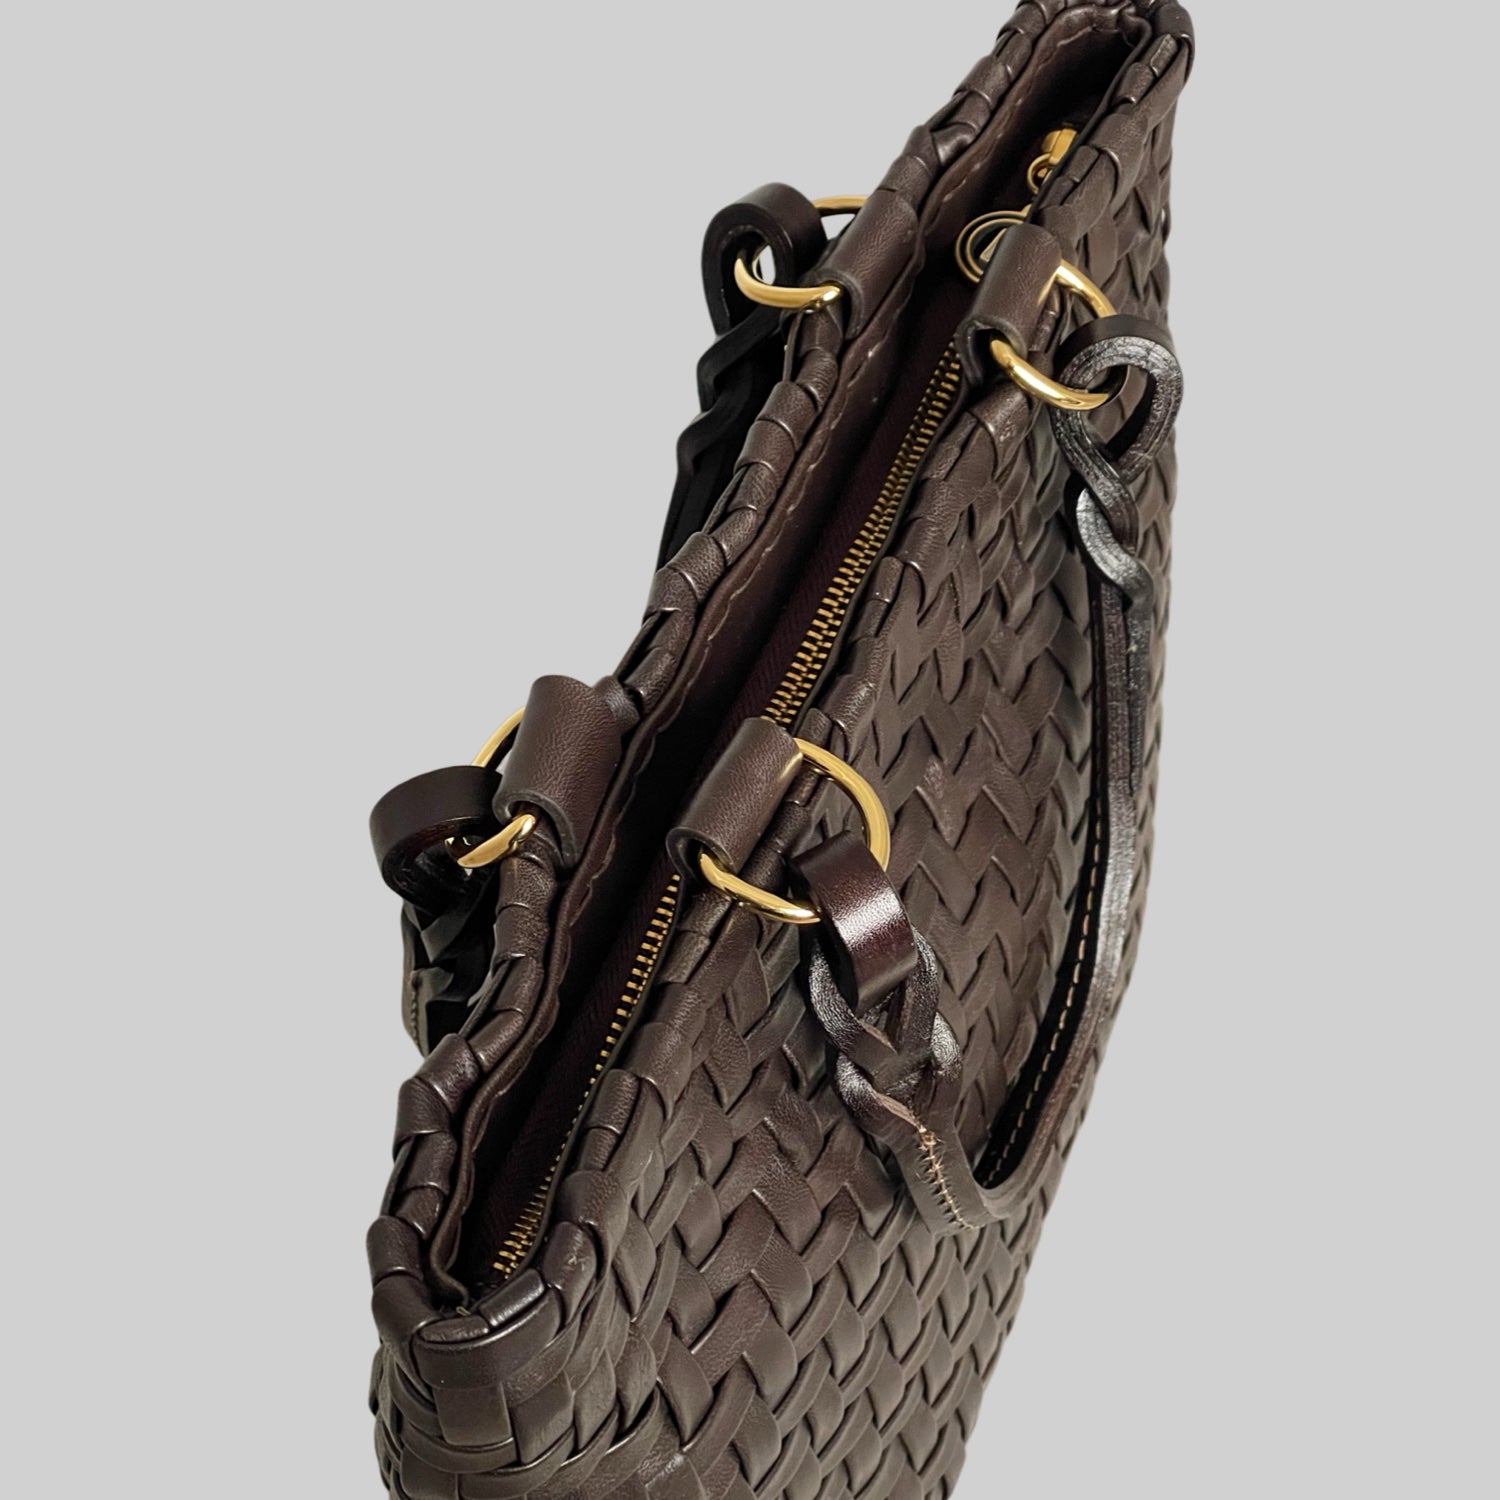 Ribichini Safari Lady-vesken i sjokolade, med flettet lammeskinn og glidelås, kombinerer stil og funksjonalitet på en elegant måte.